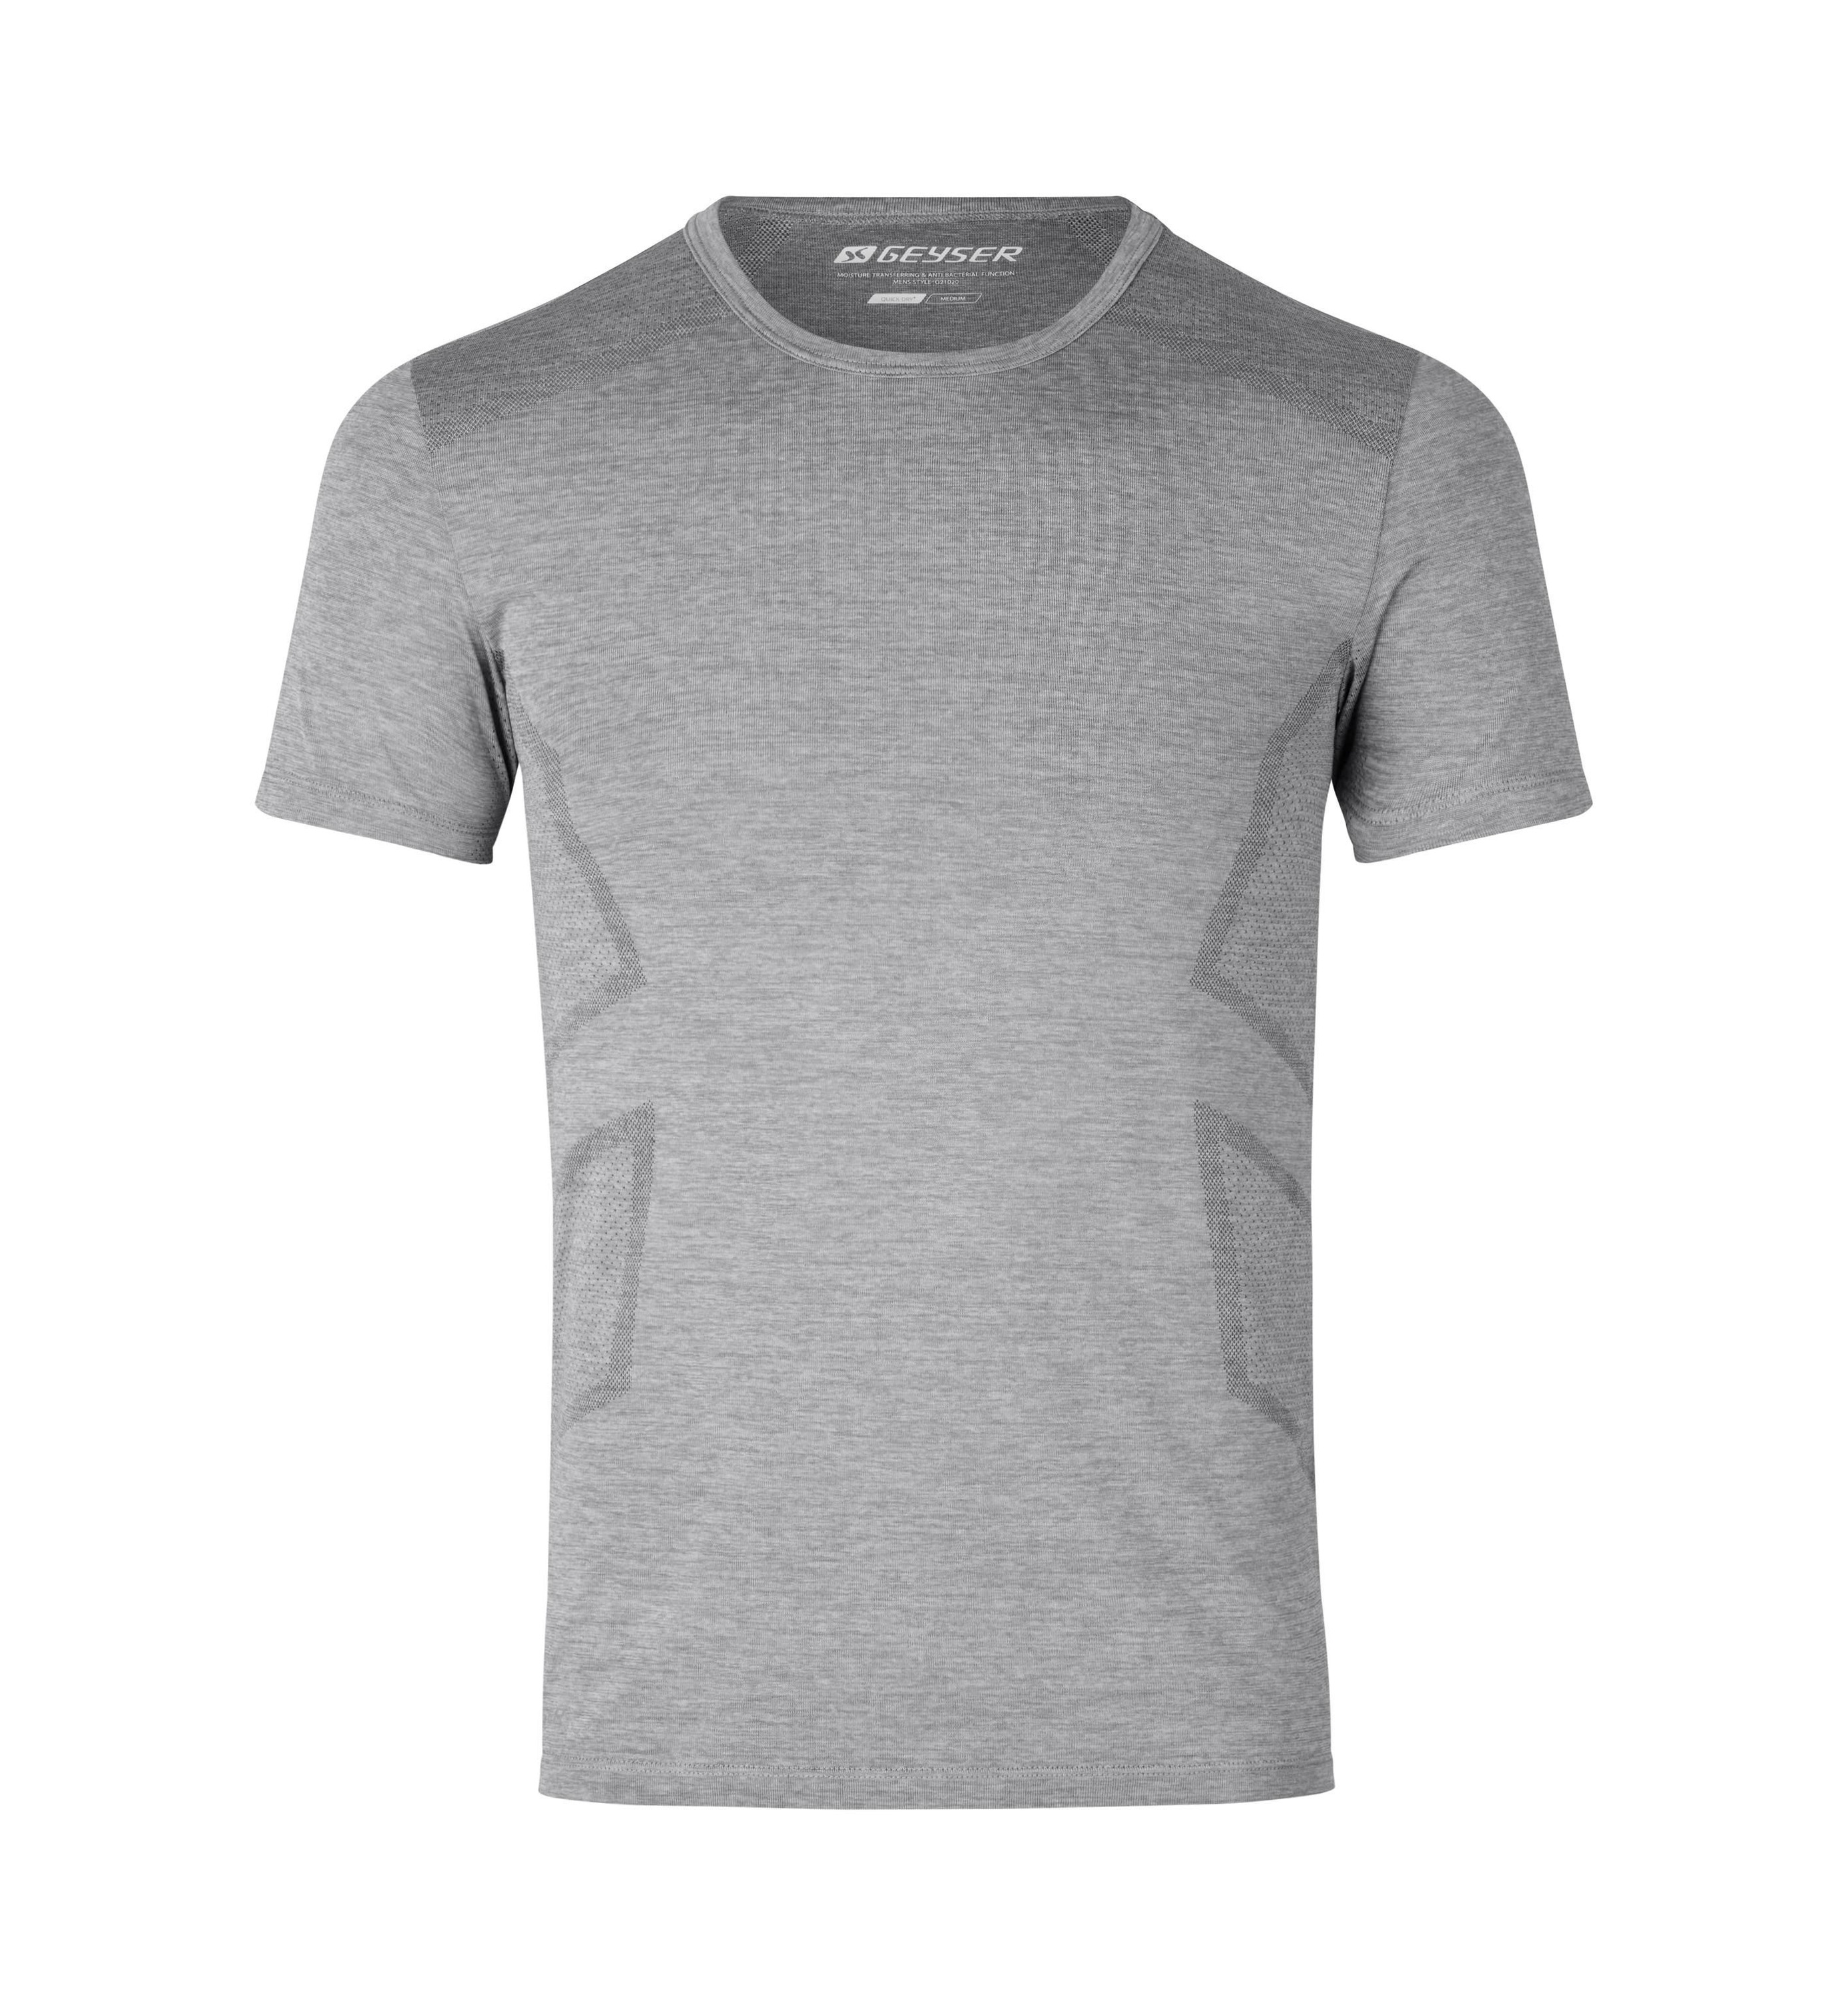 Рубашка GEYSER T Shirt seamless, цвет Grau meliert